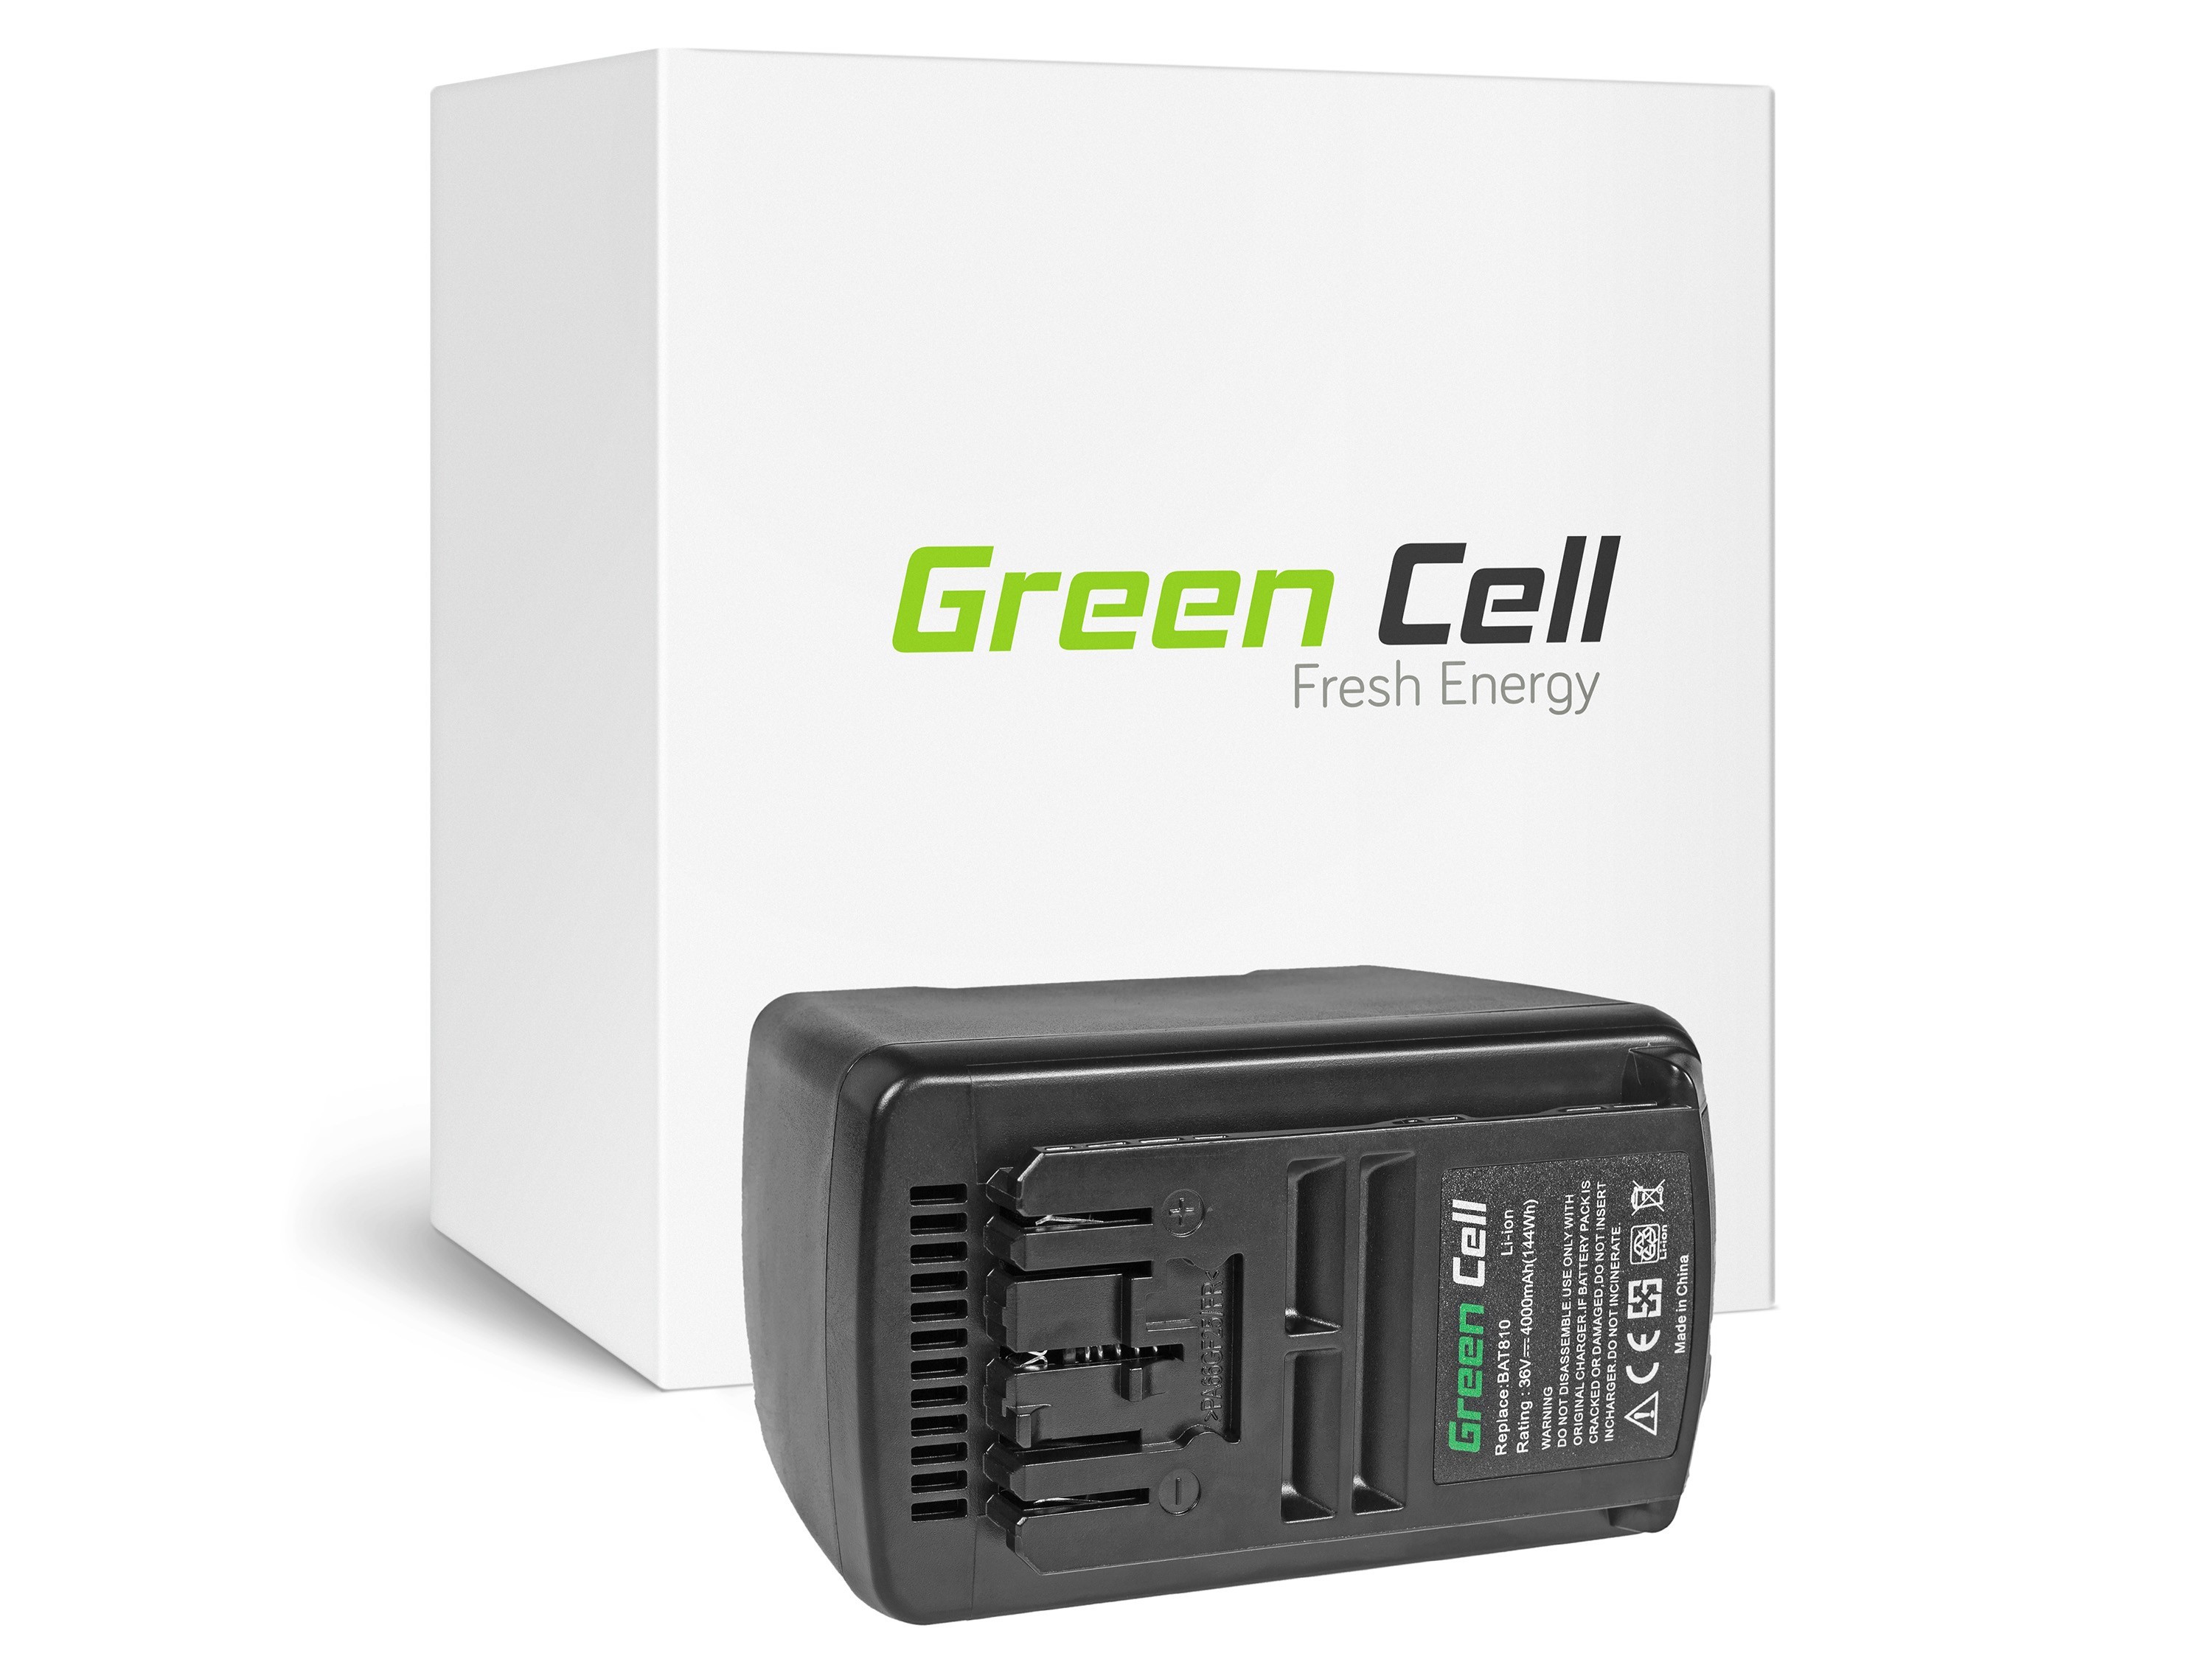 Green Cell Power Tool Battery for Bosch BAT810 BAT836 BAT840 GBH GSB GSR 36V 4Ah